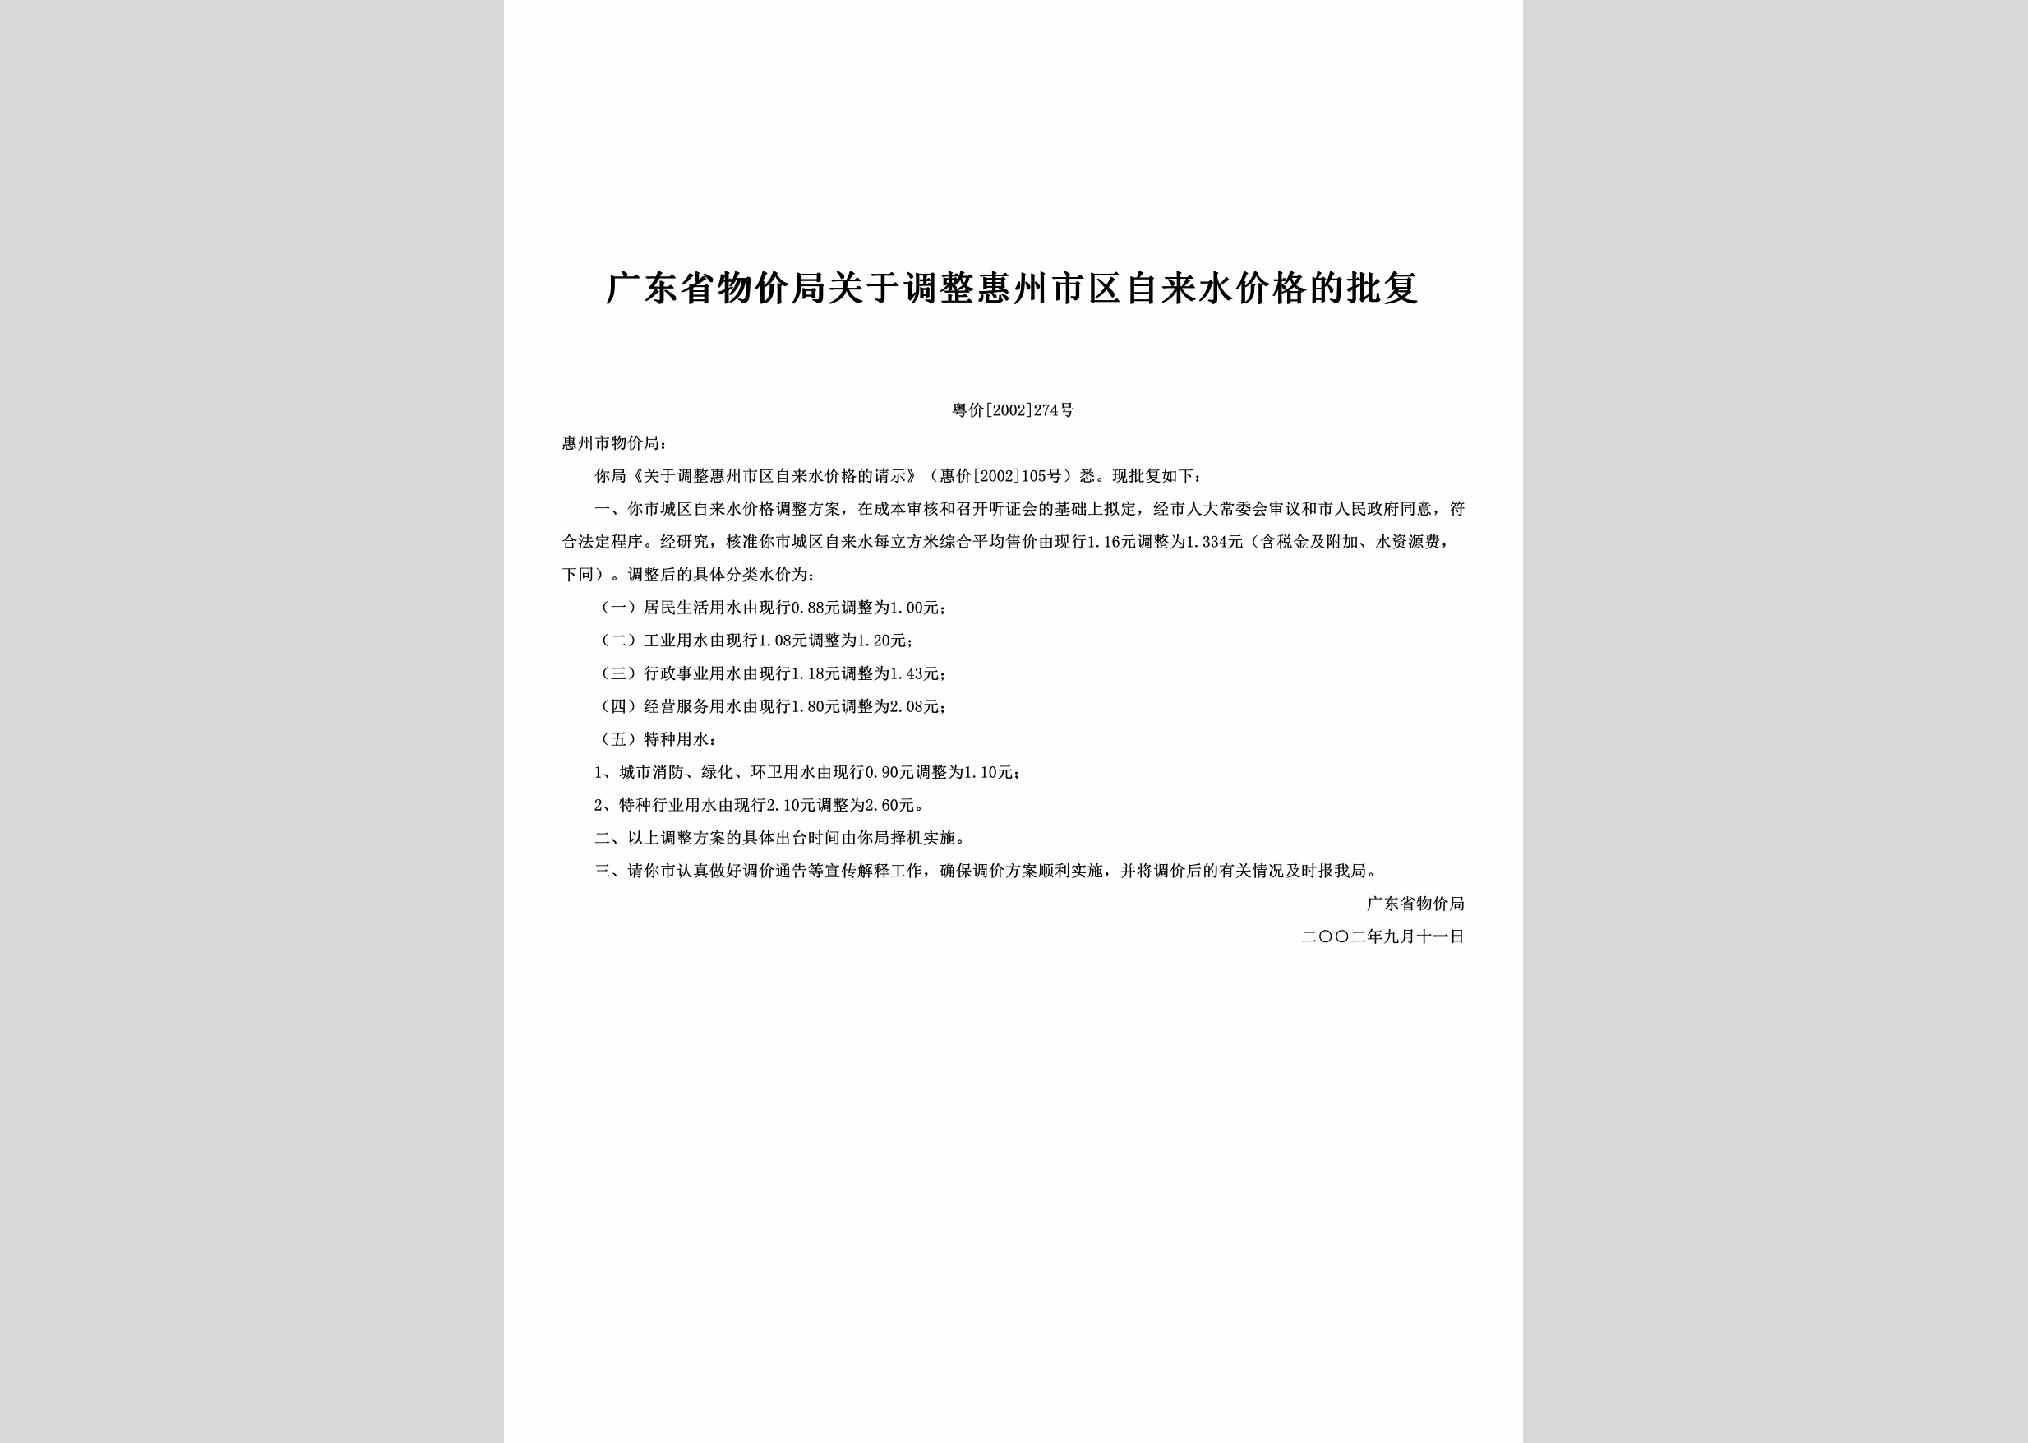 粤价[2002]274号：关于调整惠州市区自来水价格的批复